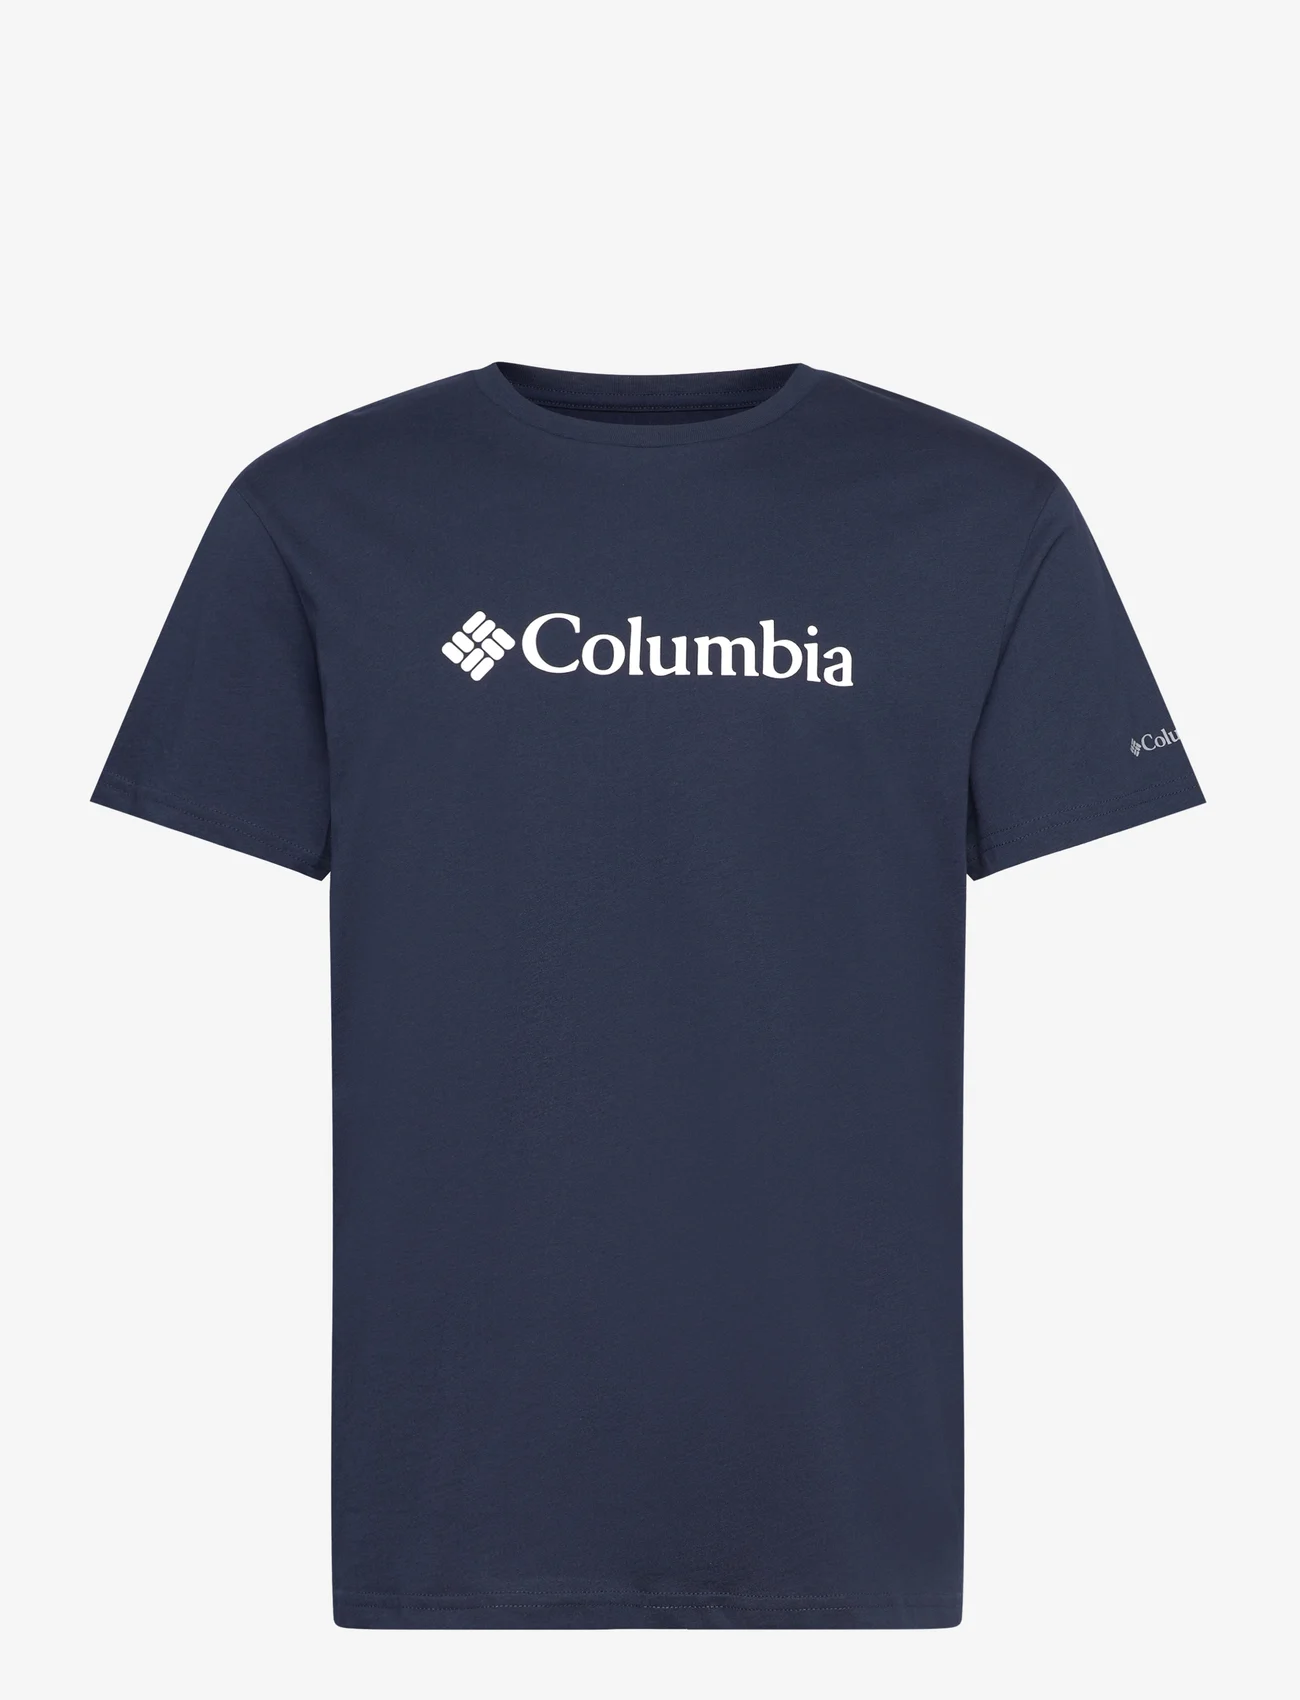 Columbia Sportswear - CSC Basic Logo Short Sleeve - laveste priser - collegiate navy, white - 0